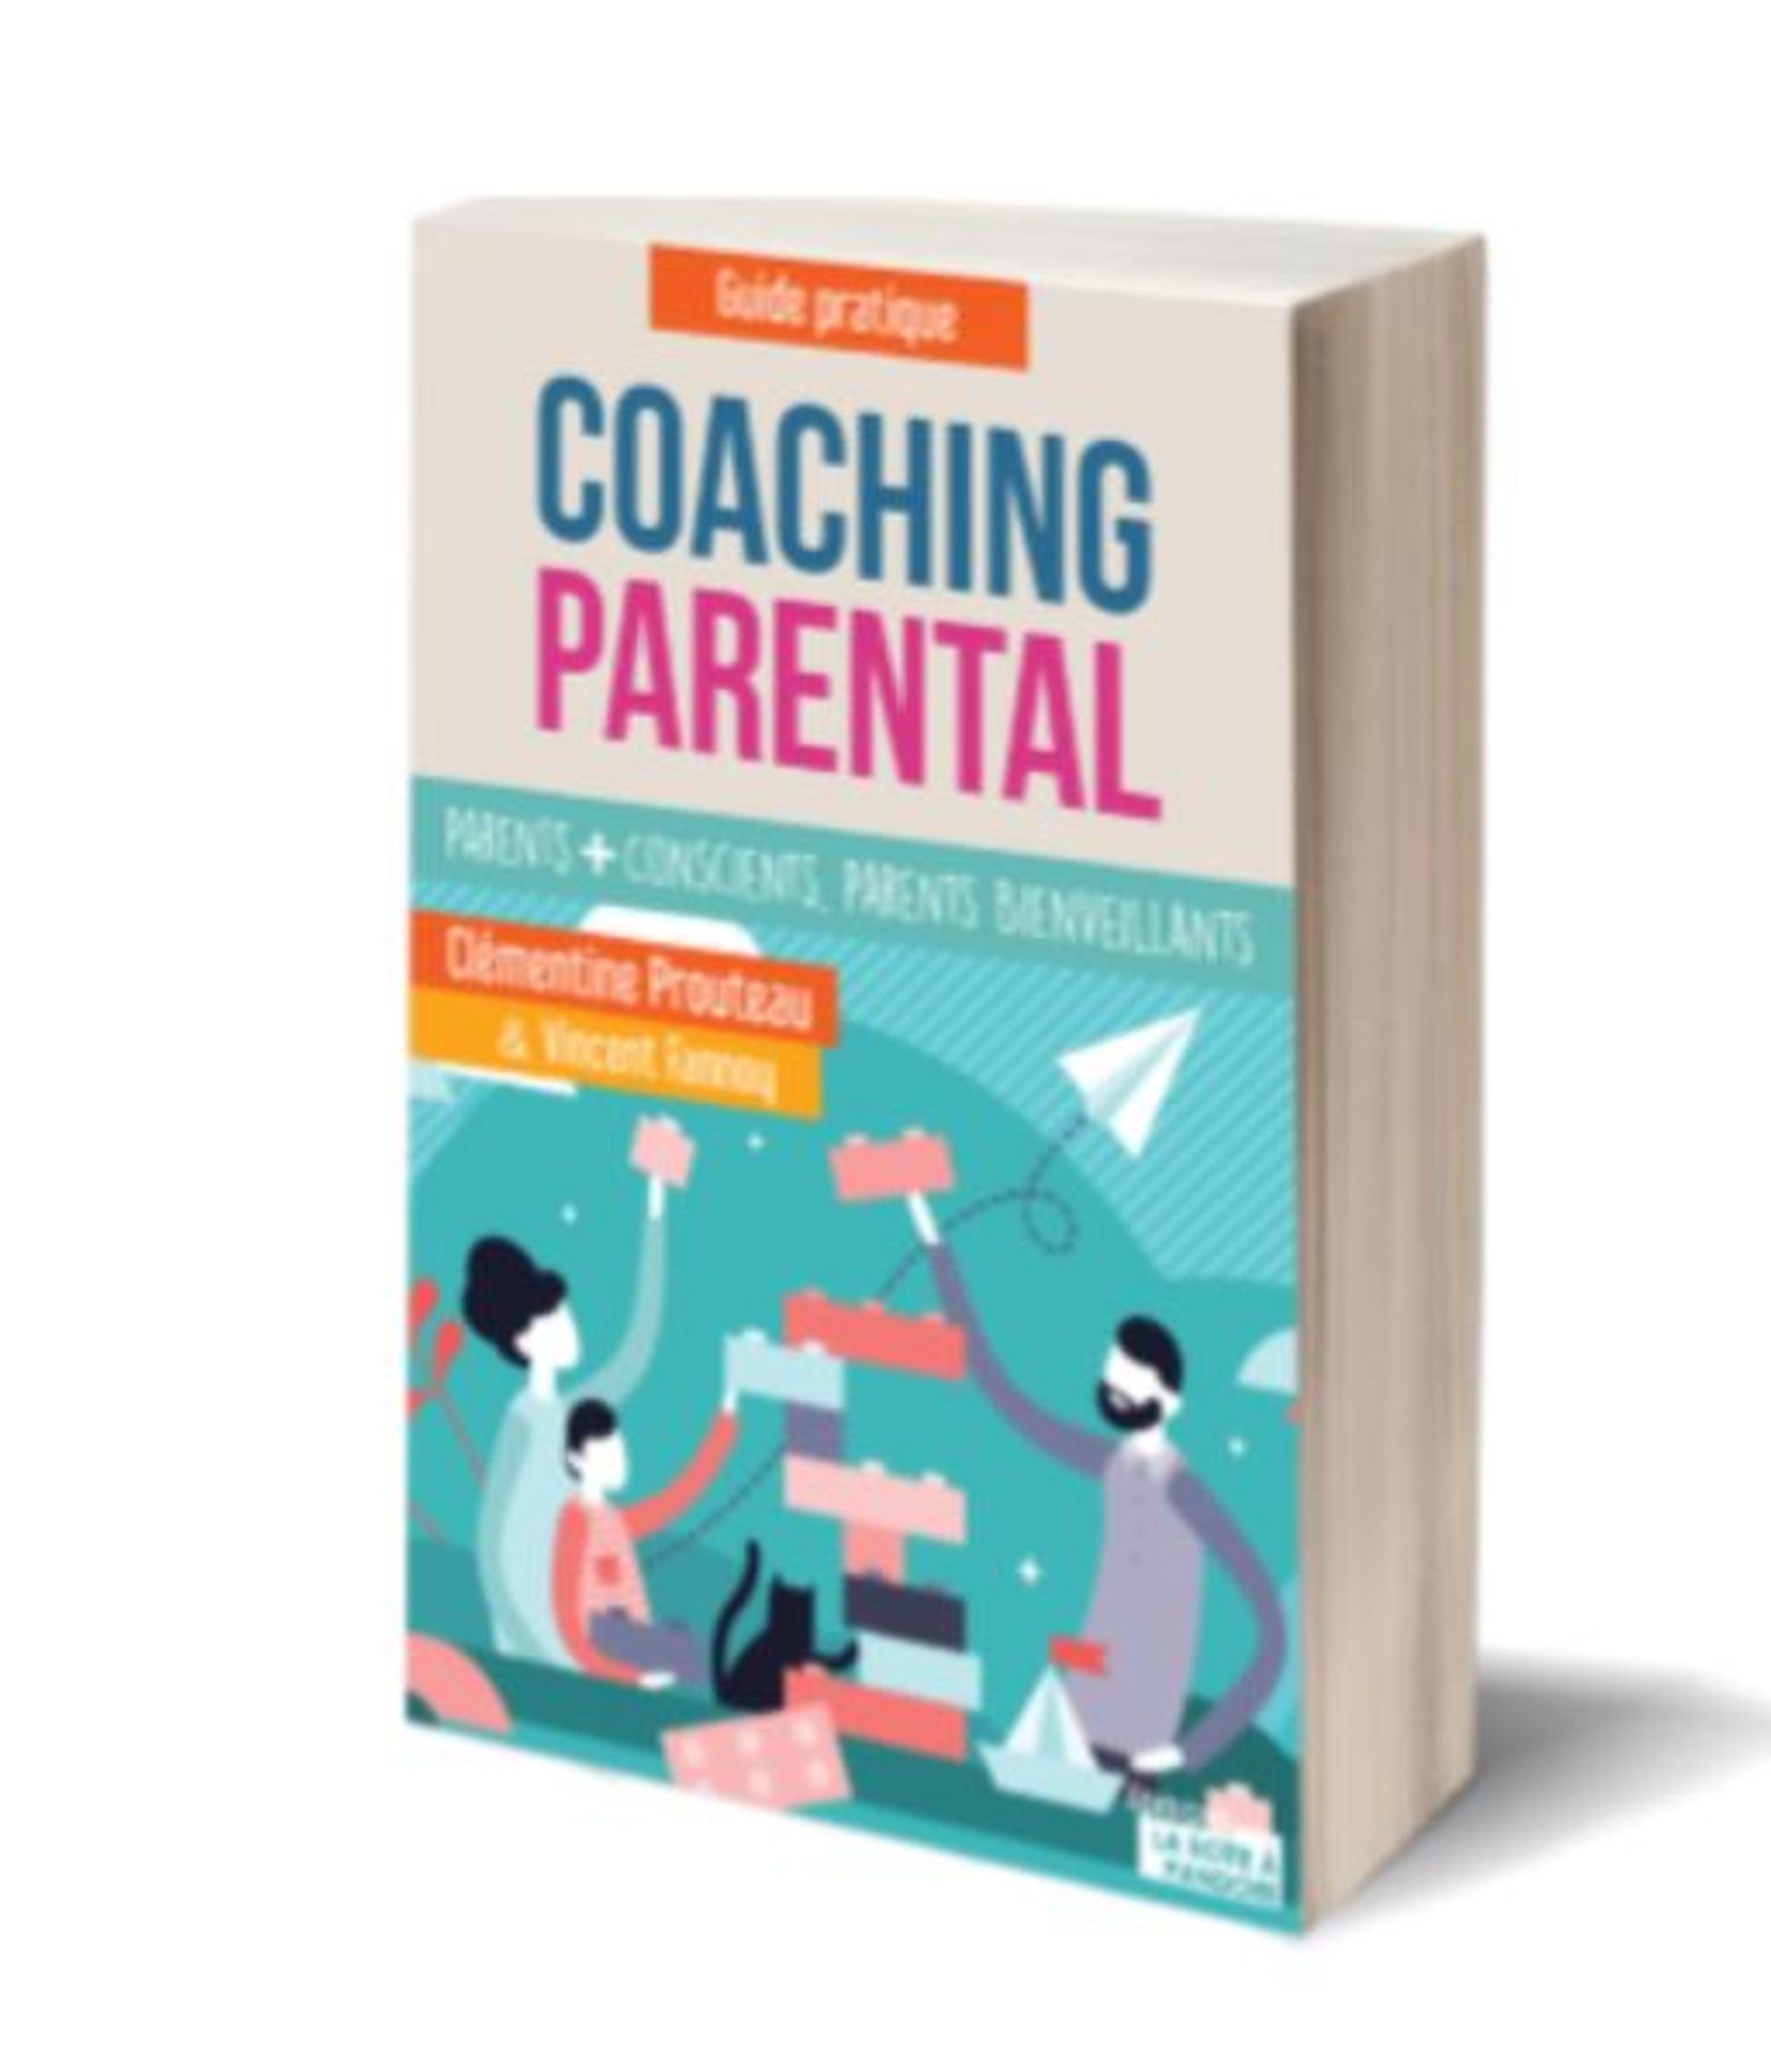 Le coaching parental